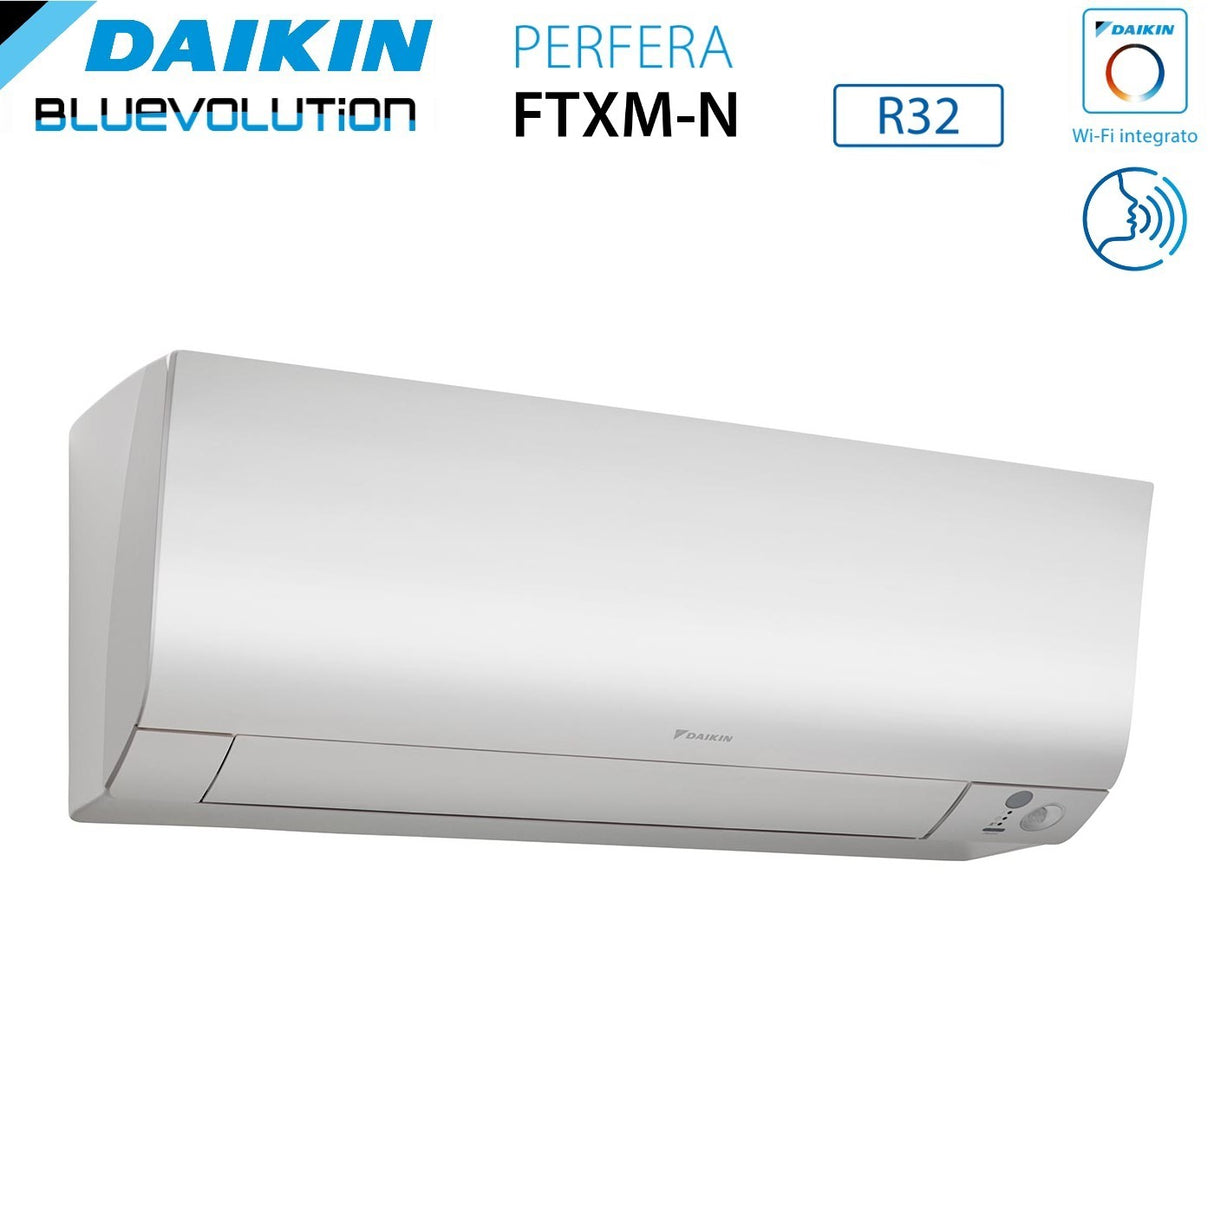 immagine-5-daikin-climatizzatore-condizionatore-daikin-bluevolution-dual-split-inverter-serie-ftxmn-perfera-99-con-2mxm40a-r-32-wi-fi-integrato-90009000-garanzia-italiana-ean-8059657007643